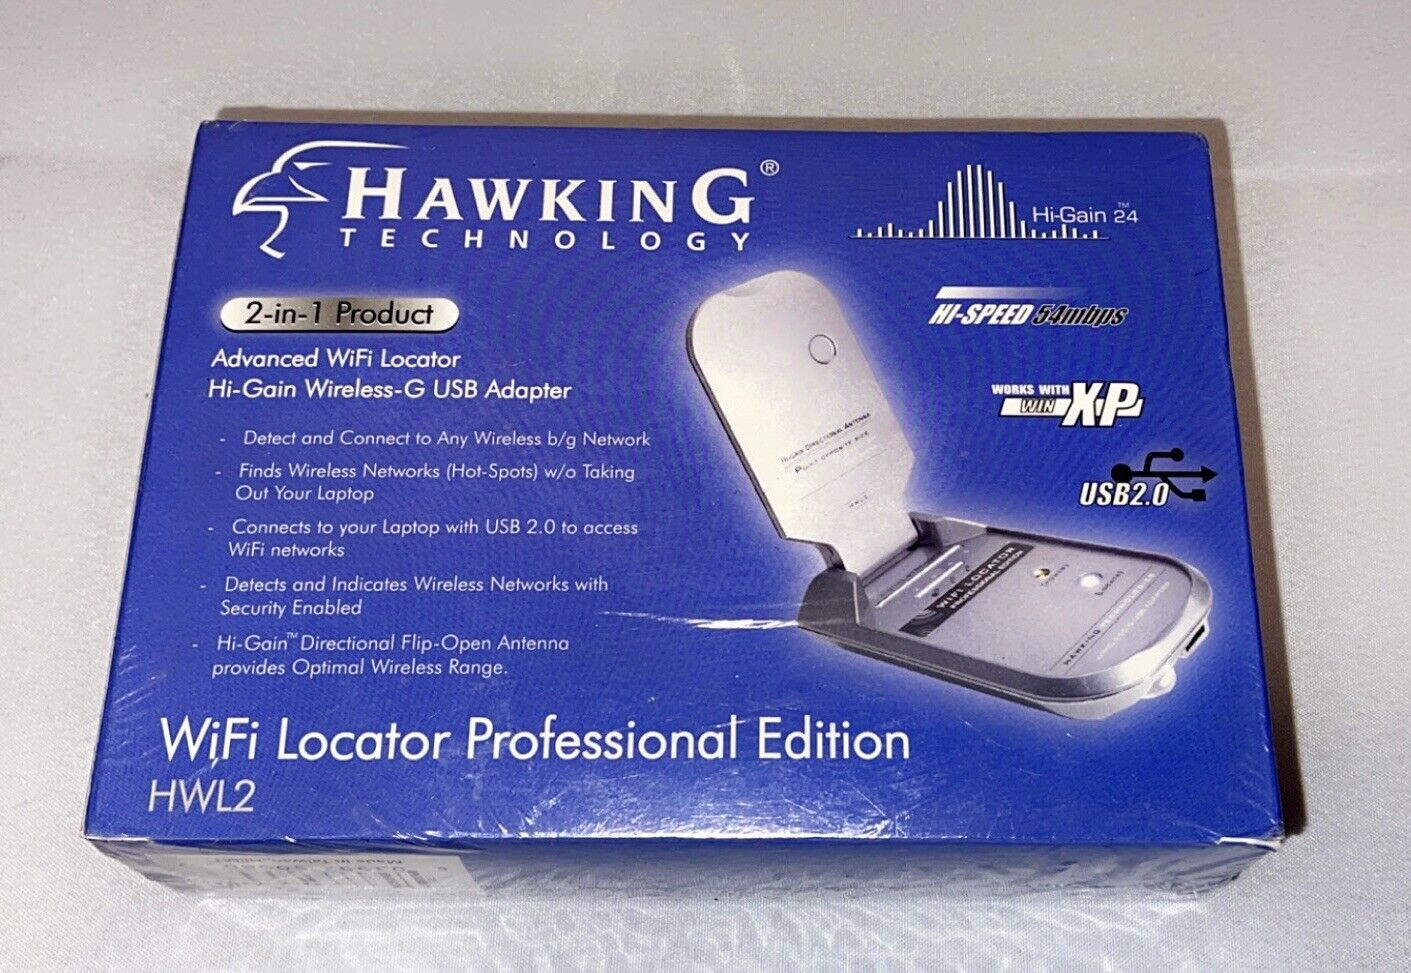 NEW HWL2 Hawking Hi-Gain Mini USB 2.0 WiFi Locator 54MB/s Professional Edition